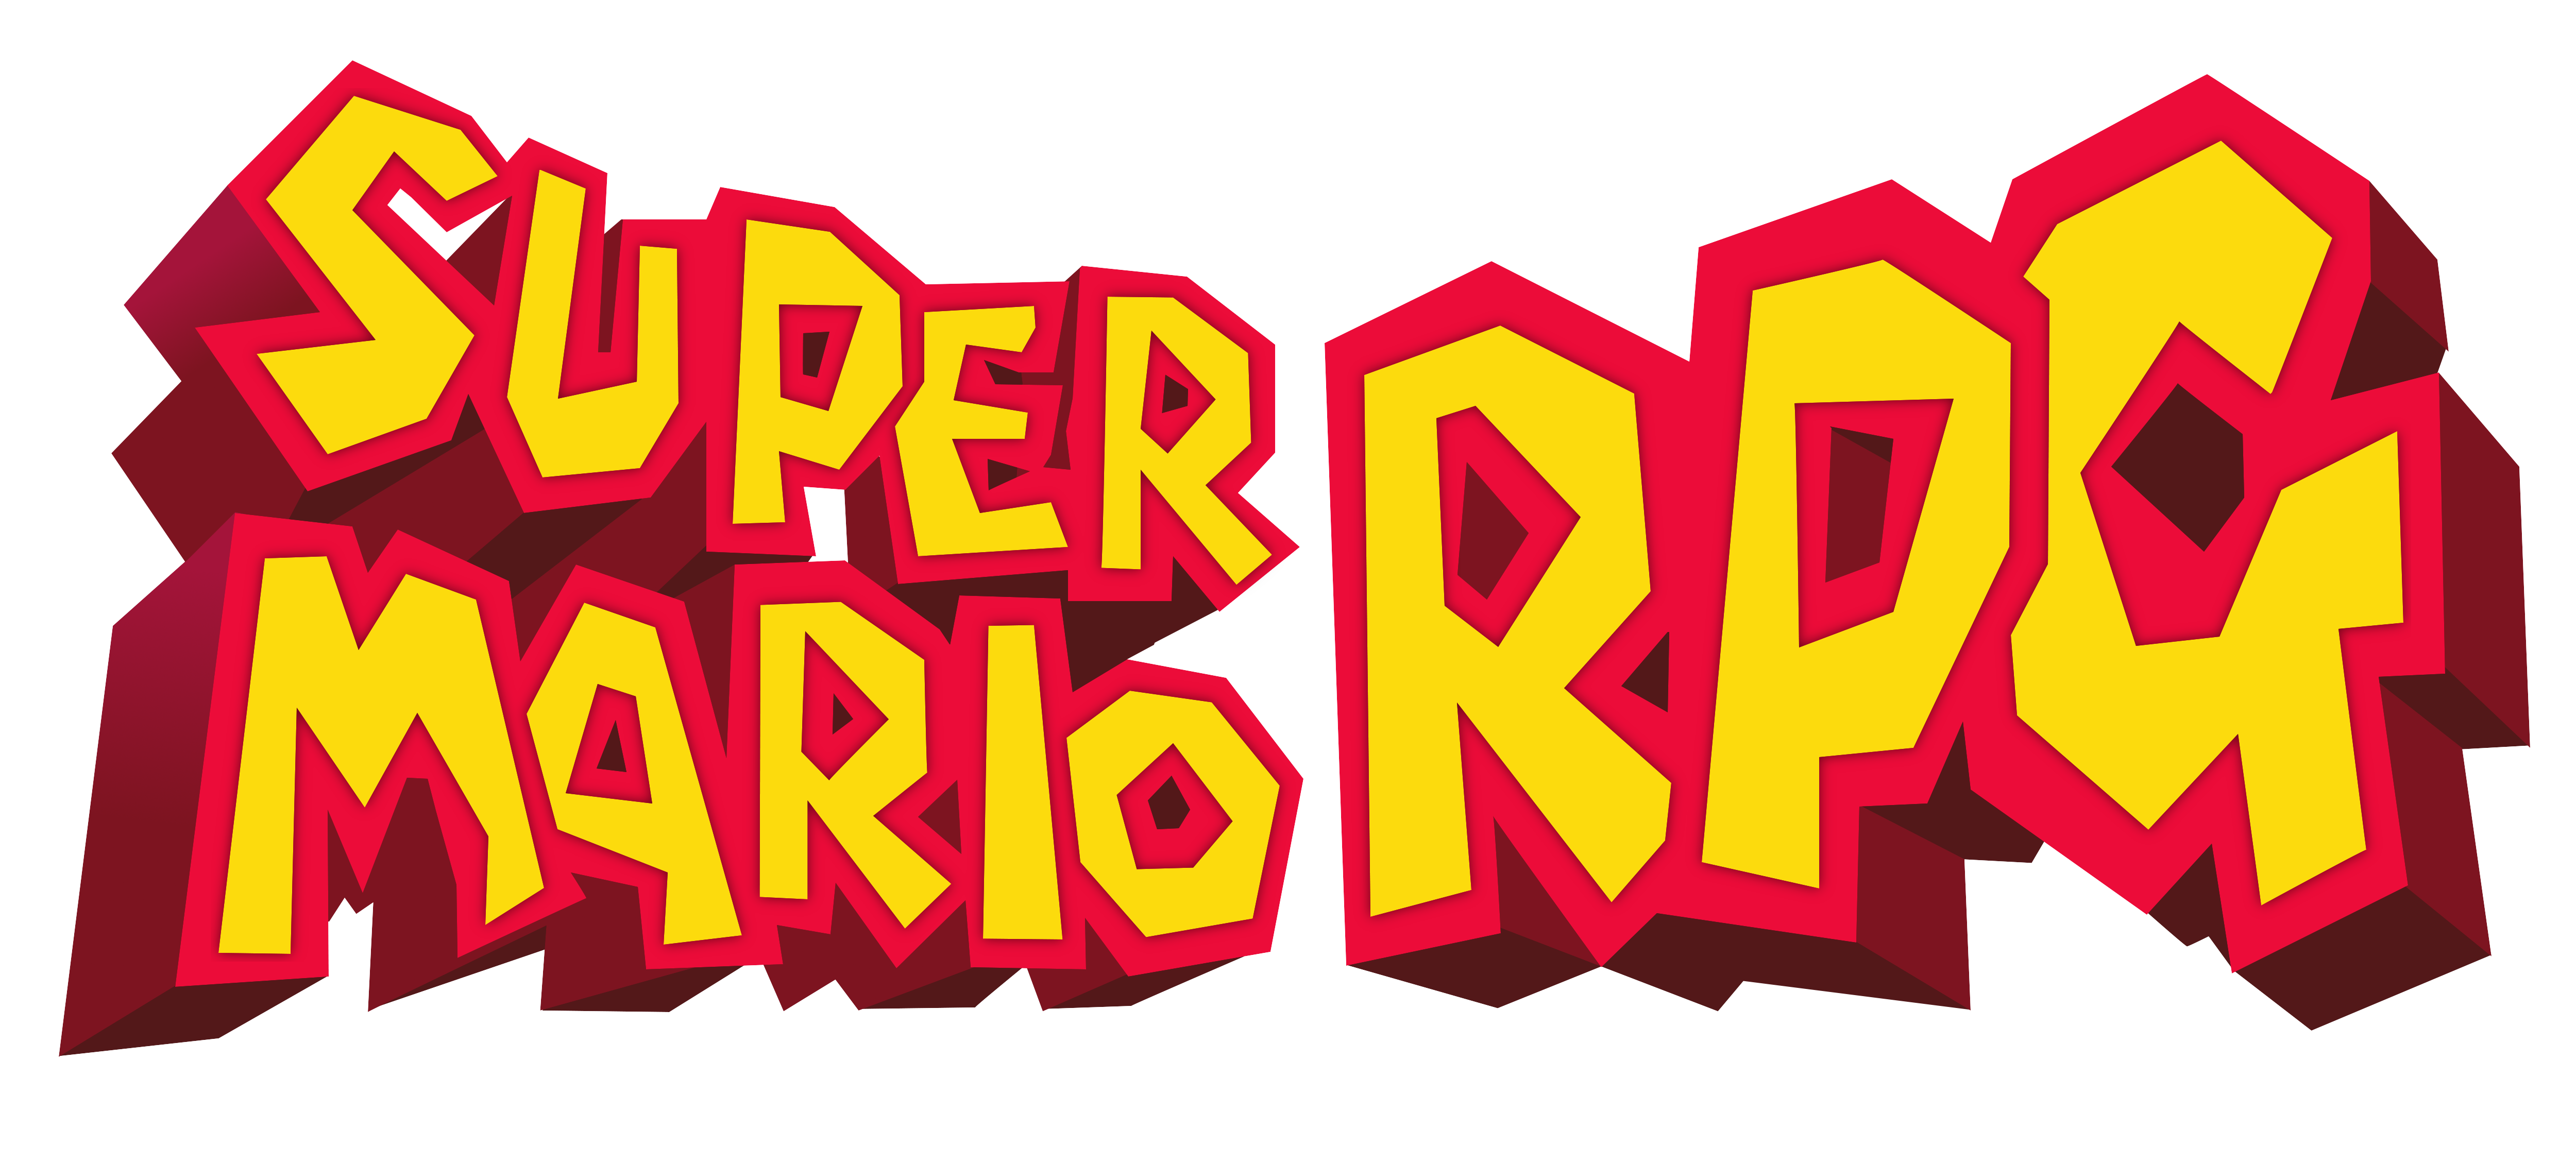 Super Mario Logo Free Download PNG Image